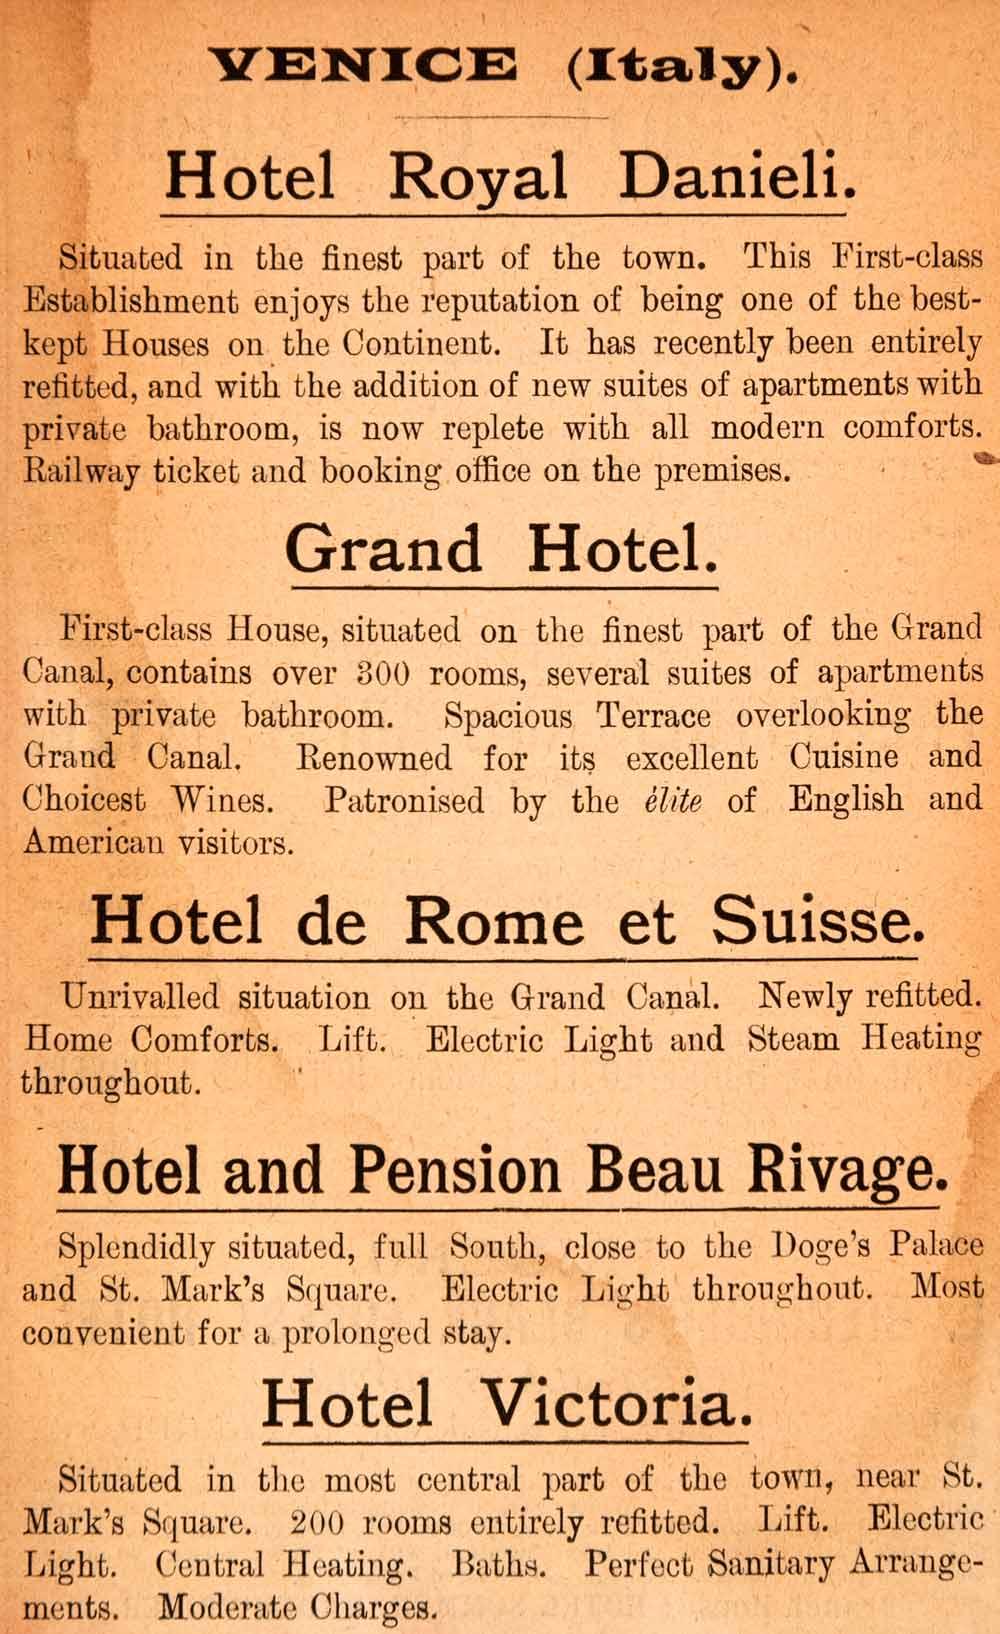 1908 Ad Venice Grand Hotel Royal Danieli Pension Beau Rivage Victoria XGJA5